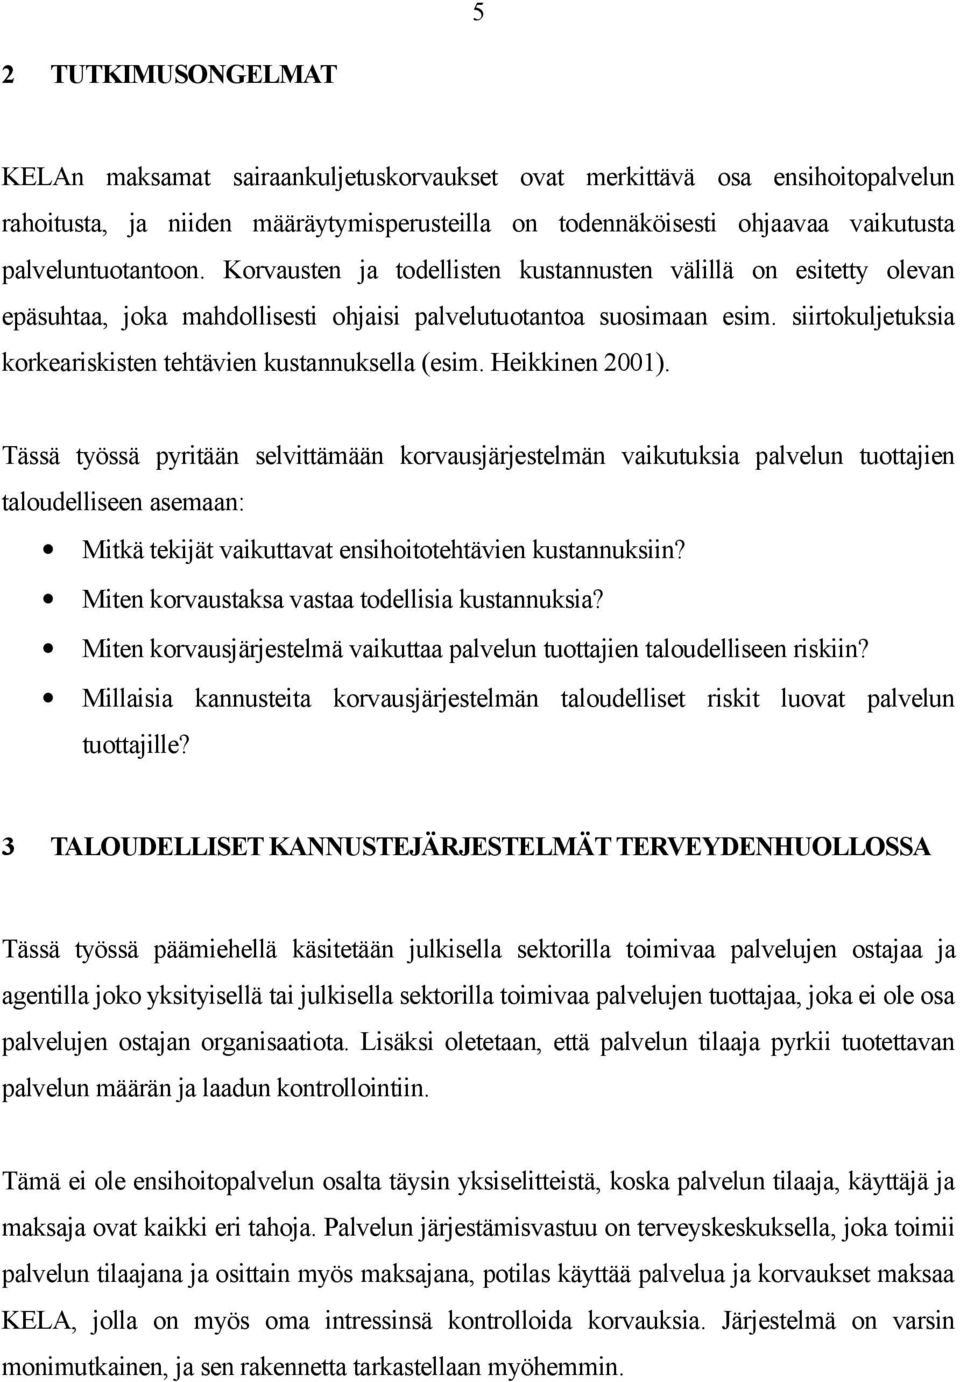 siirtokuljetuksia korkeariskisten tehtävien kustannuksella (esim. Heikkinen 2001).